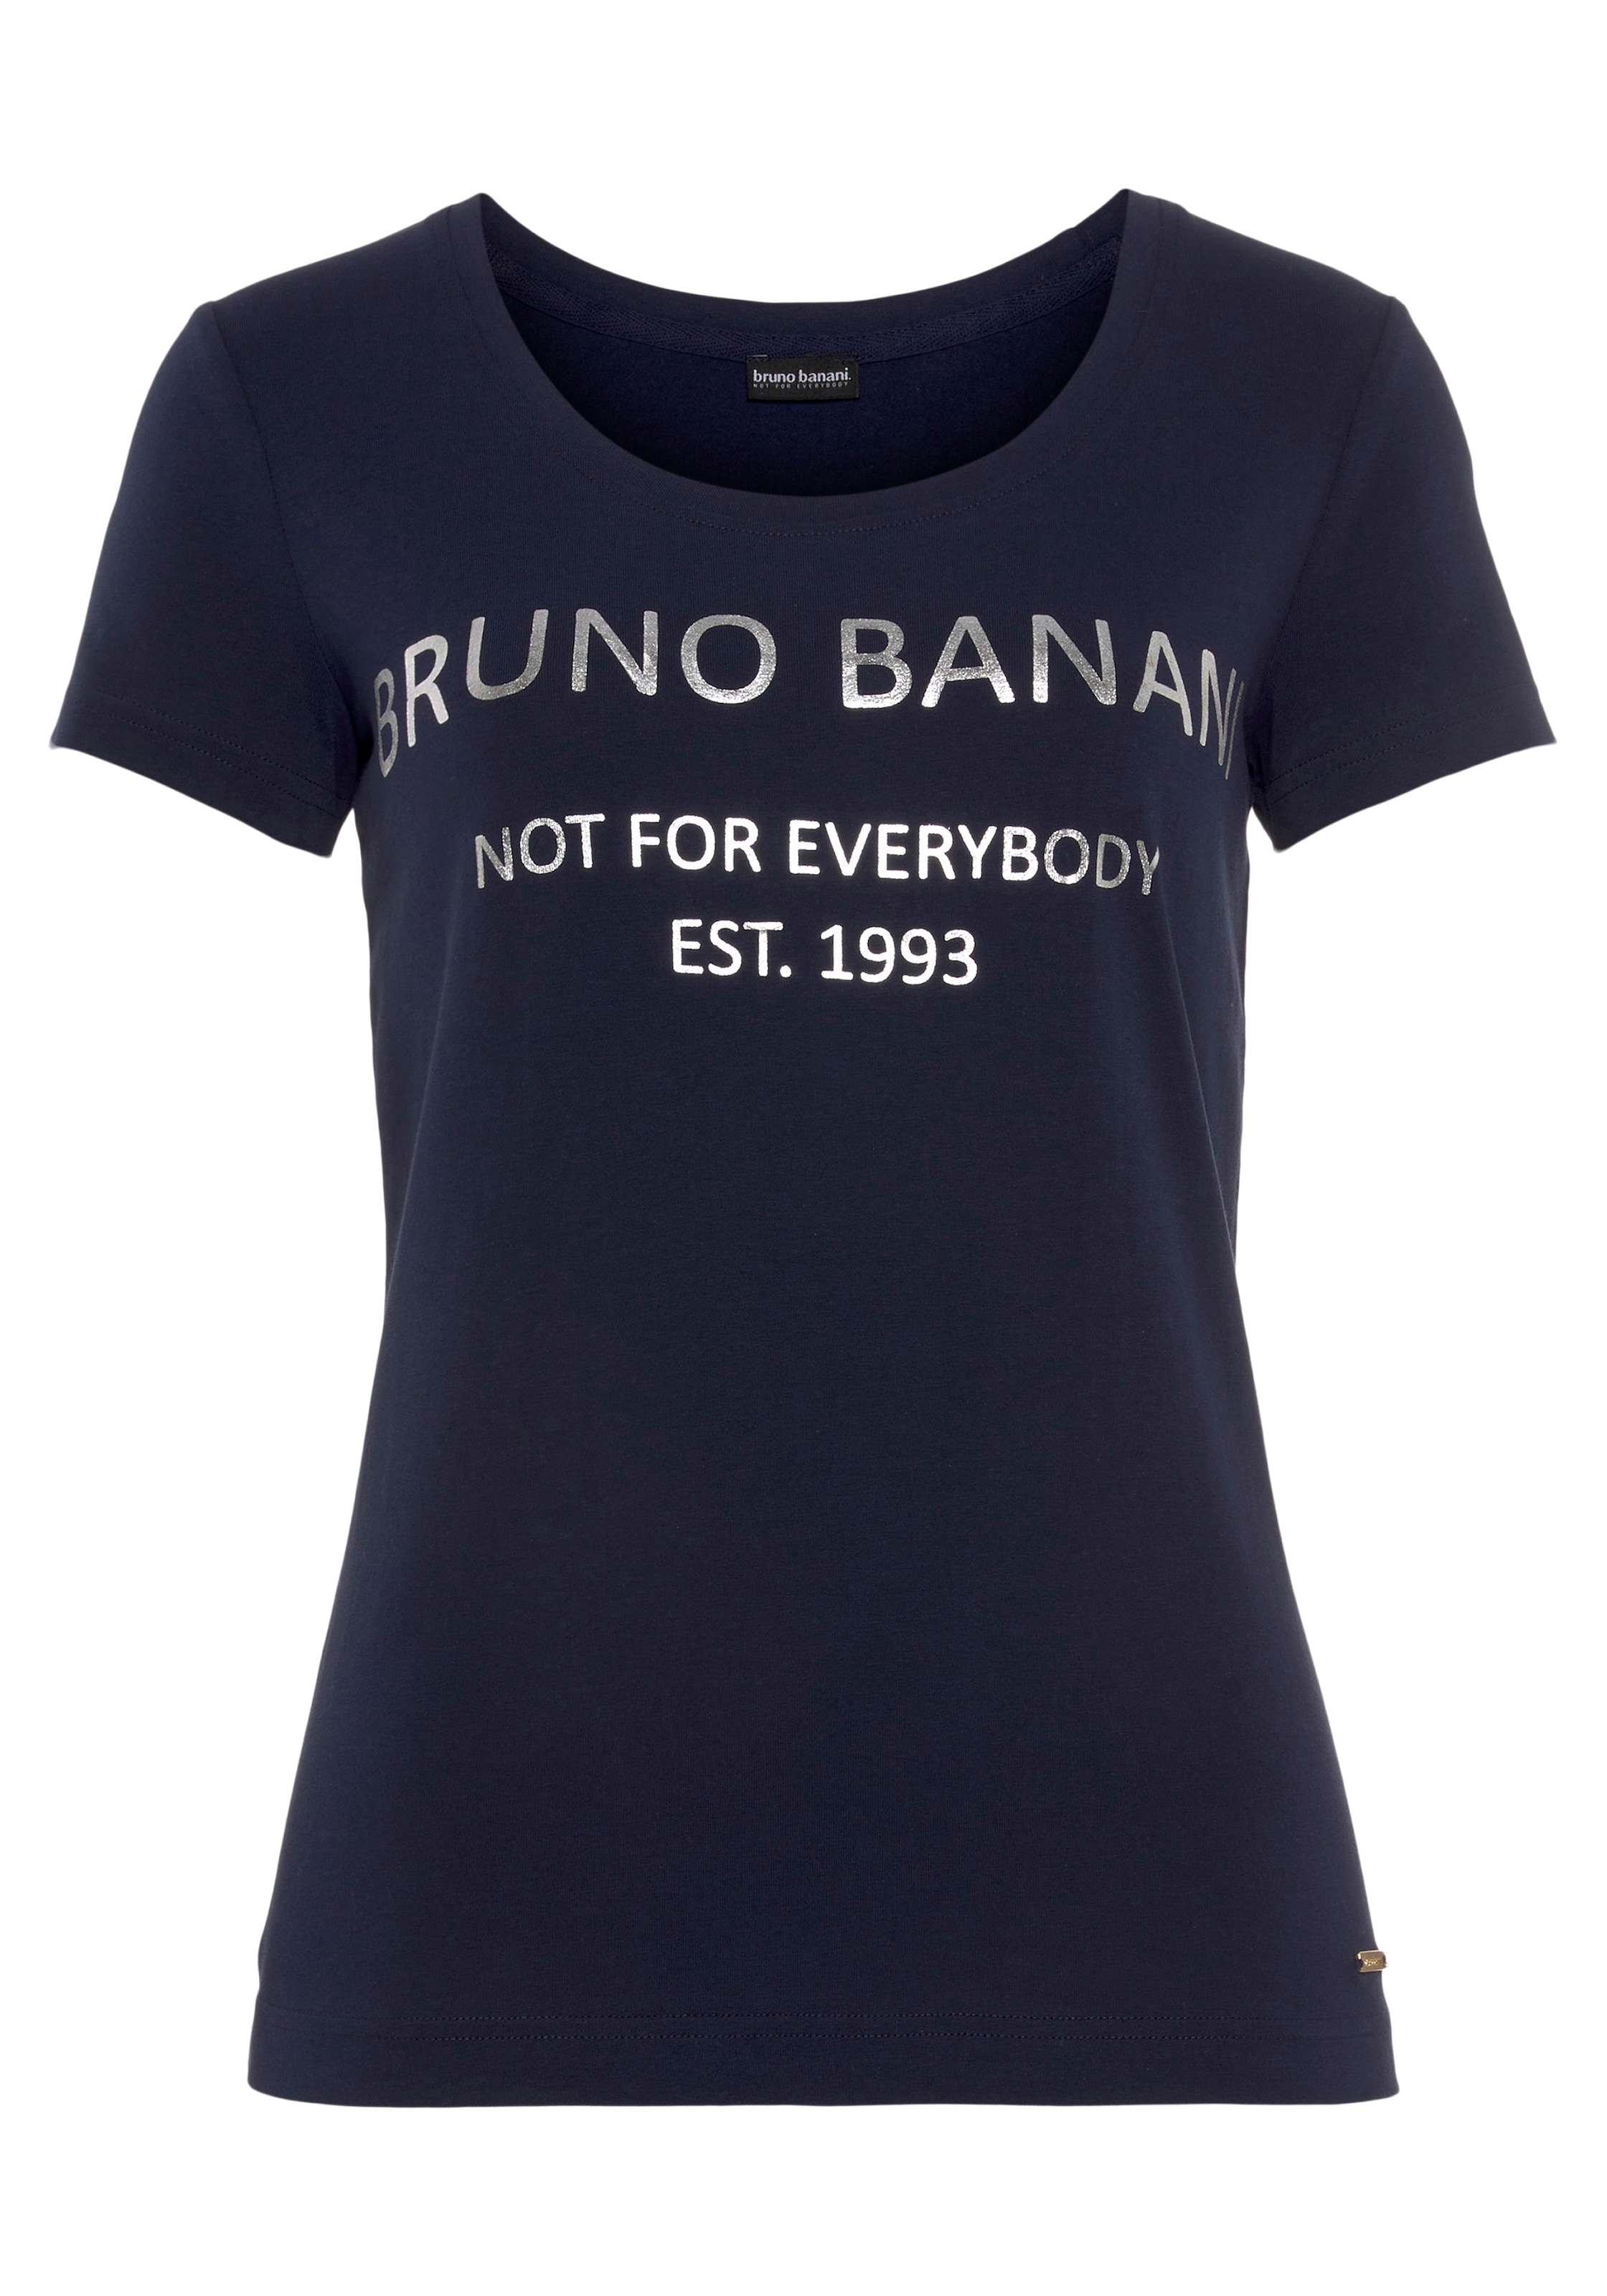 ♕ mit Logodruck Bruno bei KOLLEKTION Banani T-Shirt, NEUE goldfarbenem